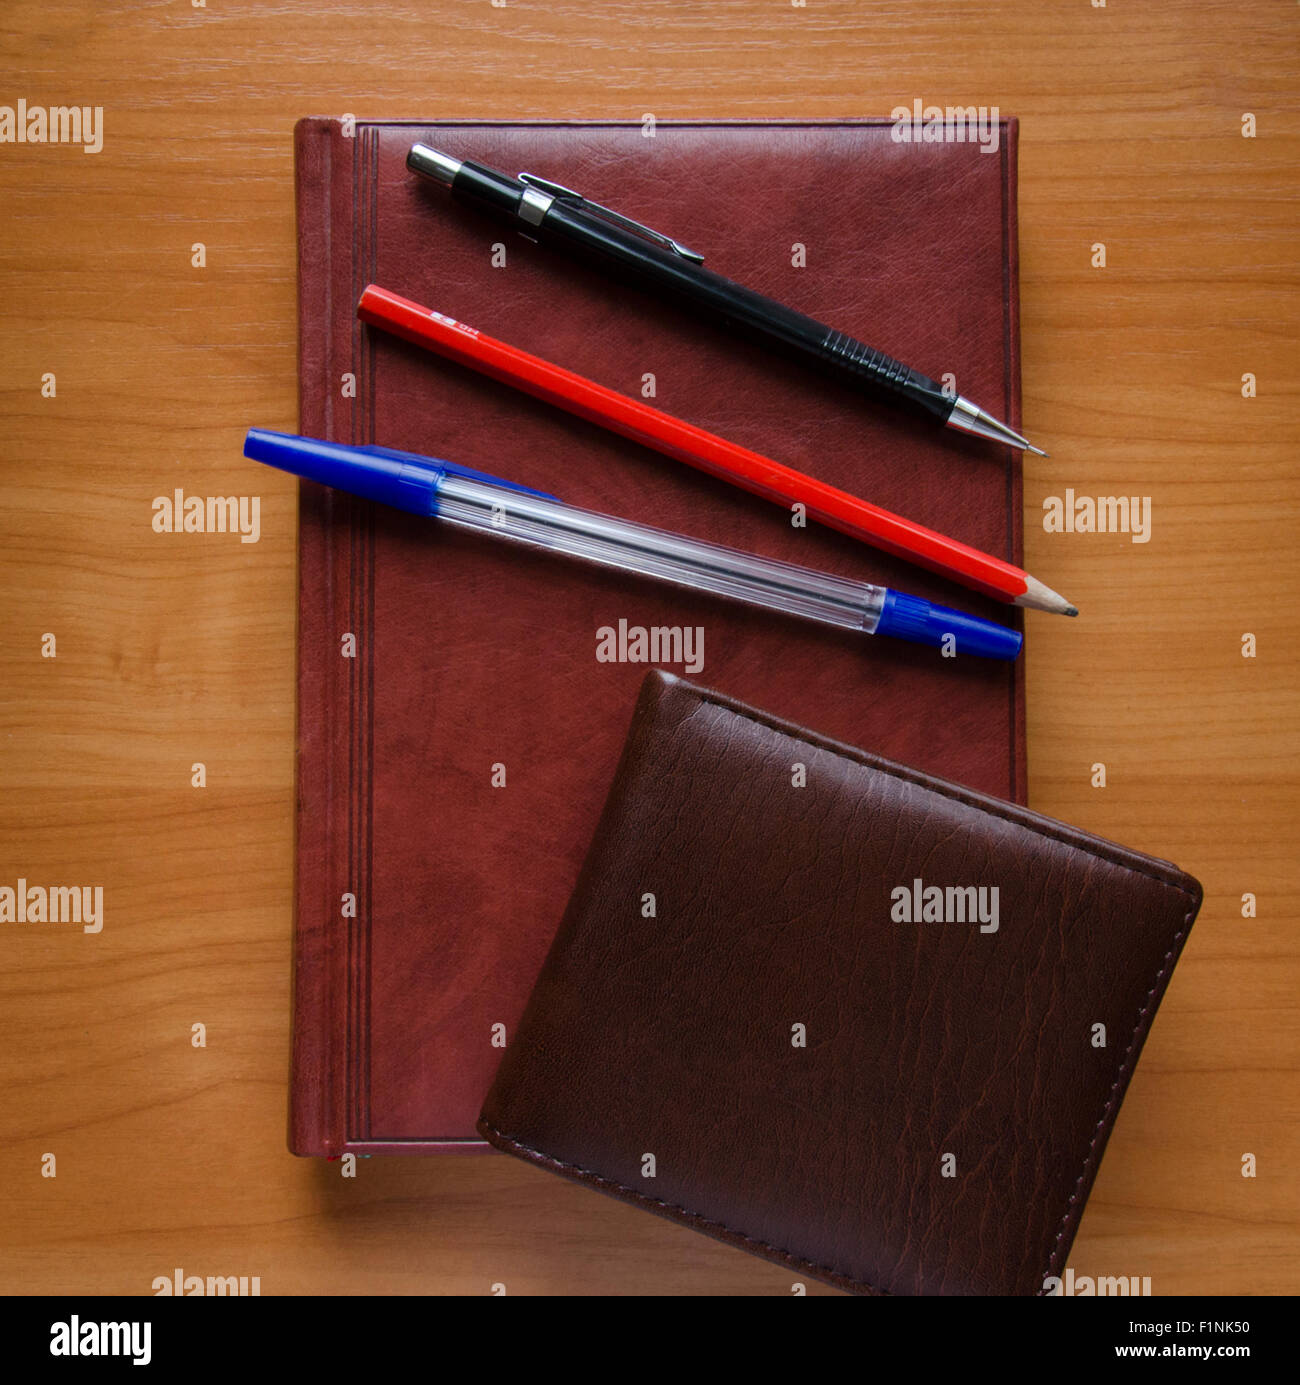 Pens, Paper, Scissors - DockYard